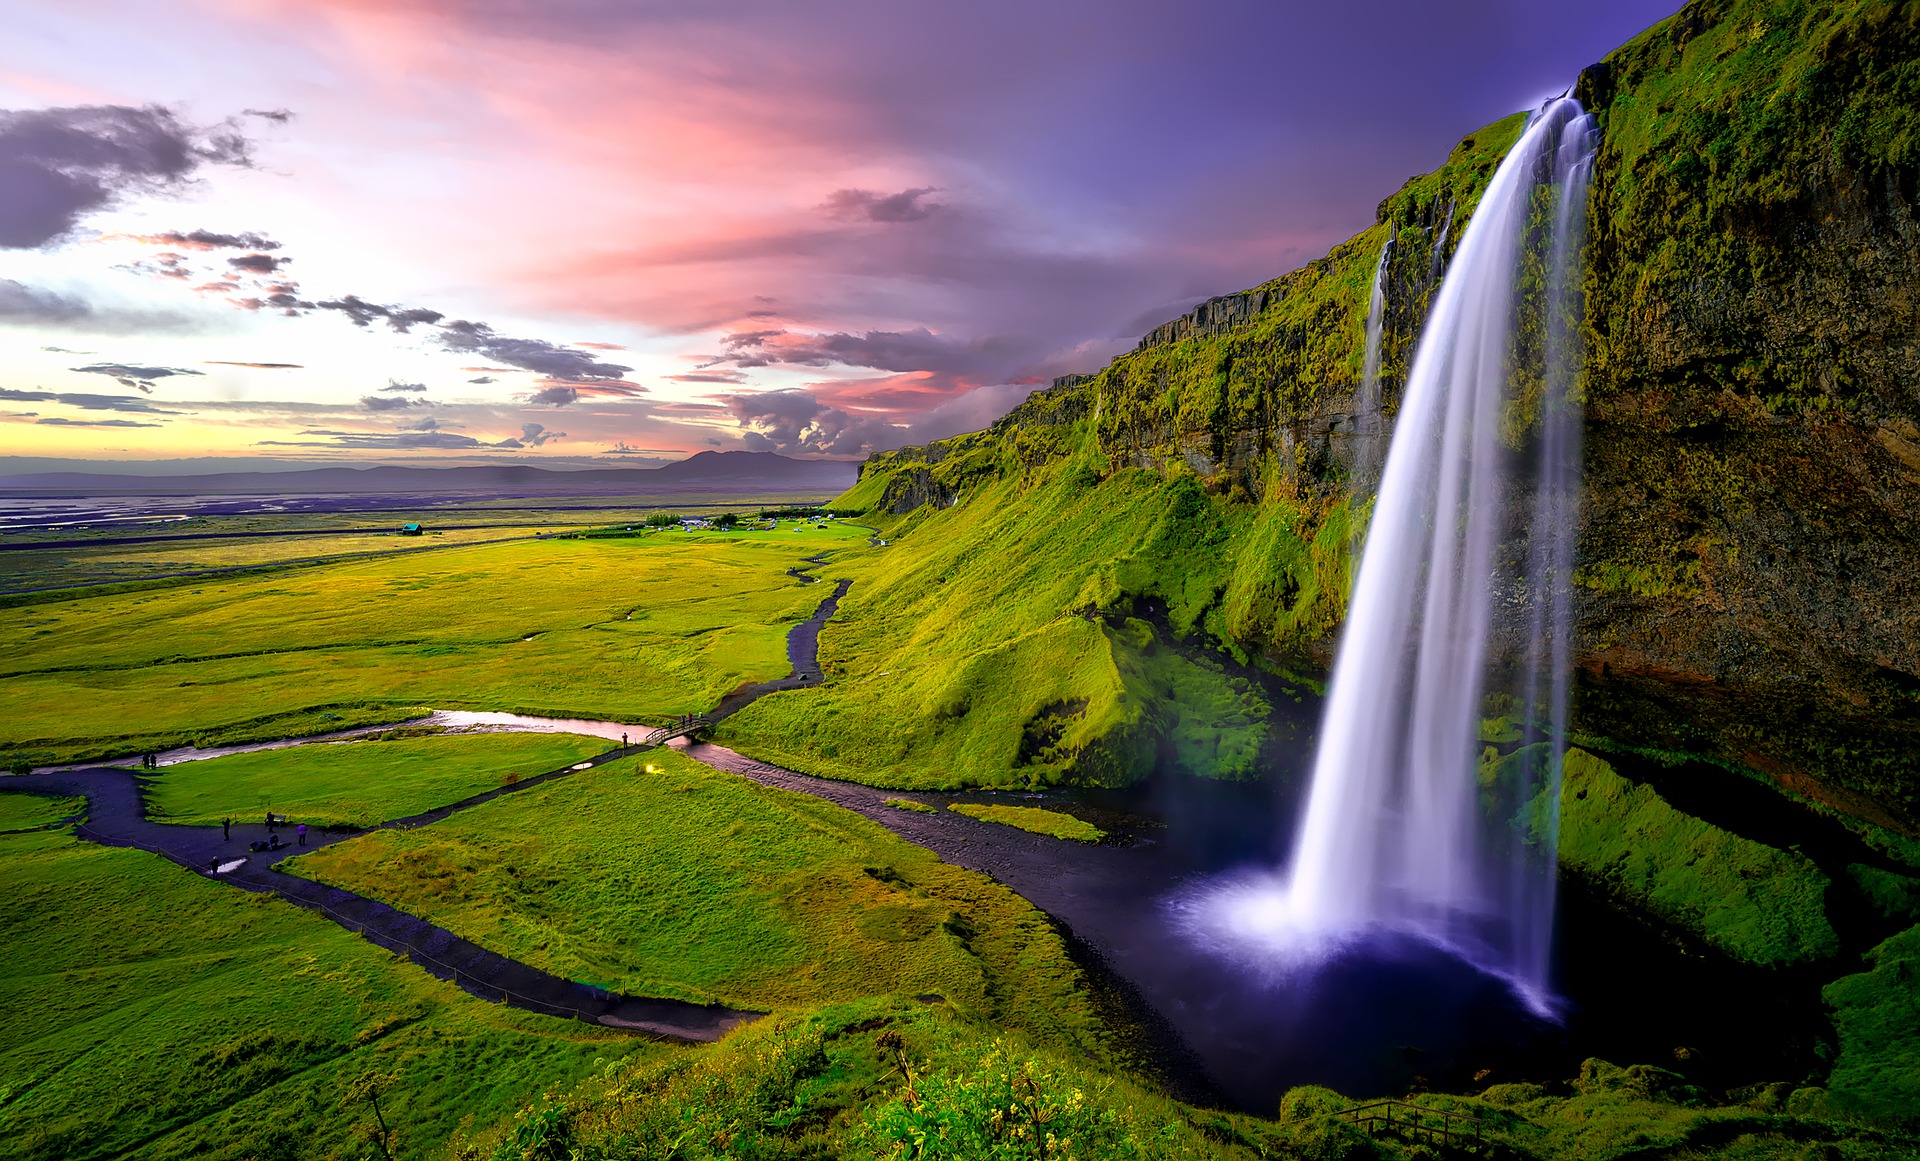 Wasserfall in grüner Landschaft bei violettem Himmel - hat eigentlich nichts mit dem Heizwasserkreislauf zu tun, sieht aber schön aus!